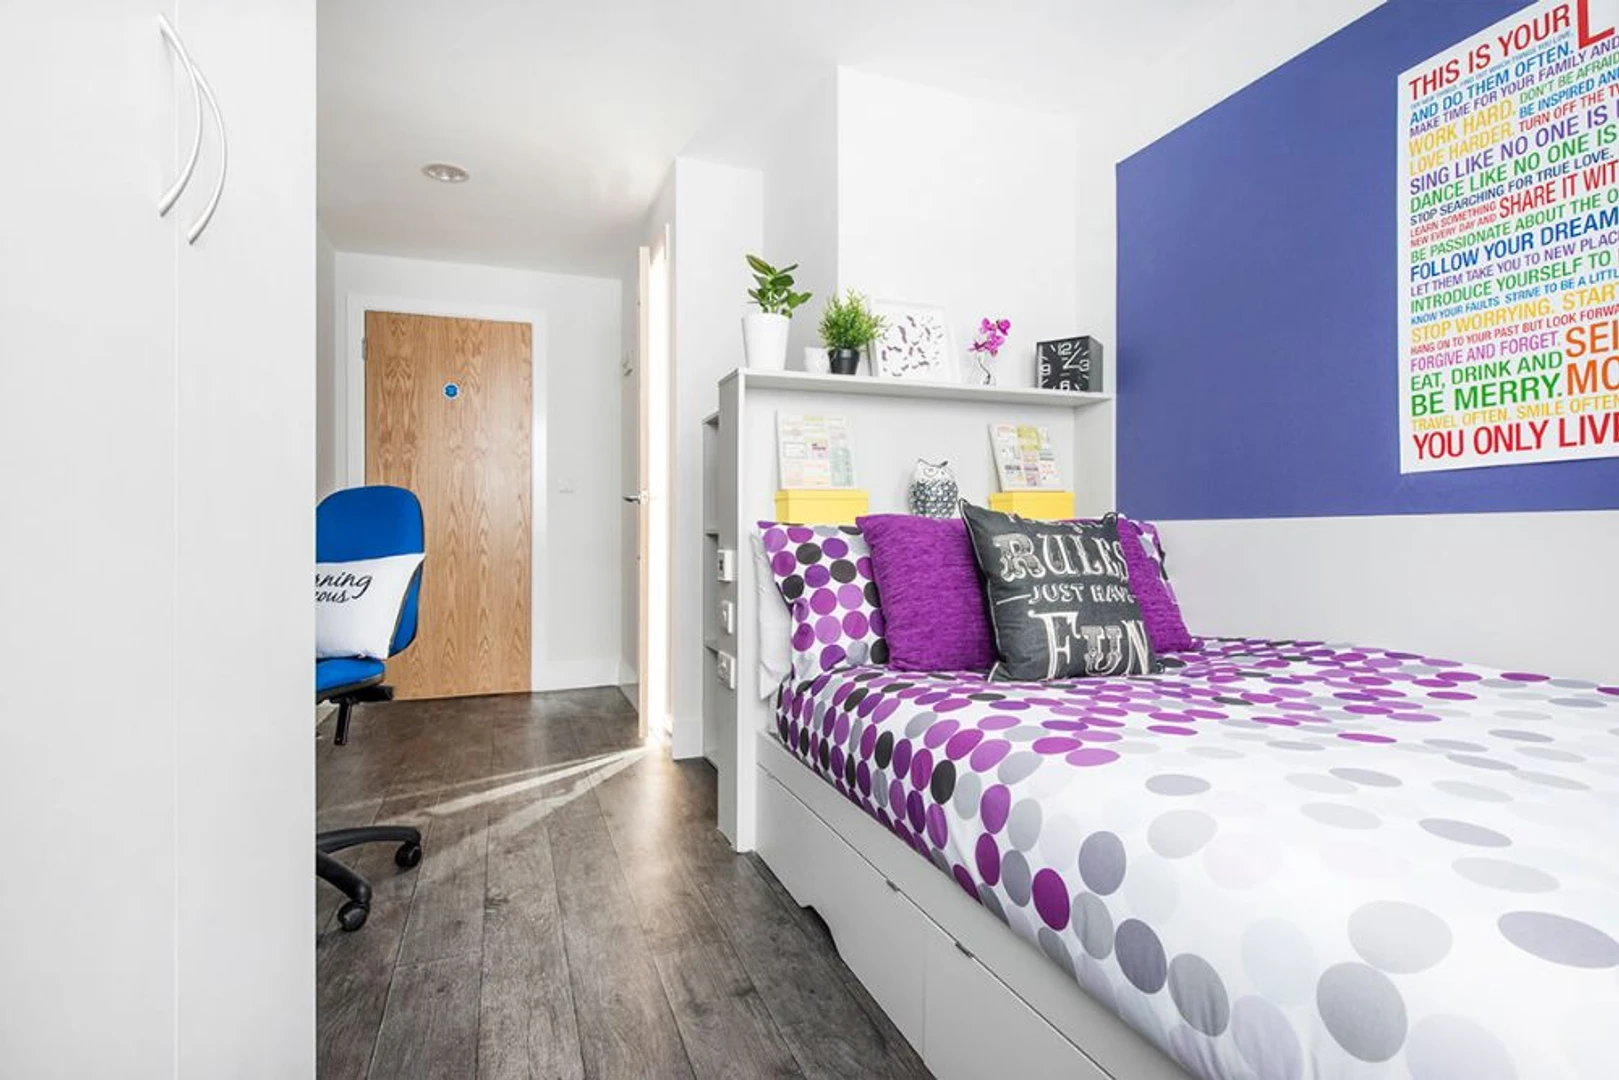 Habitación en alquiler con cama doble Liverpool